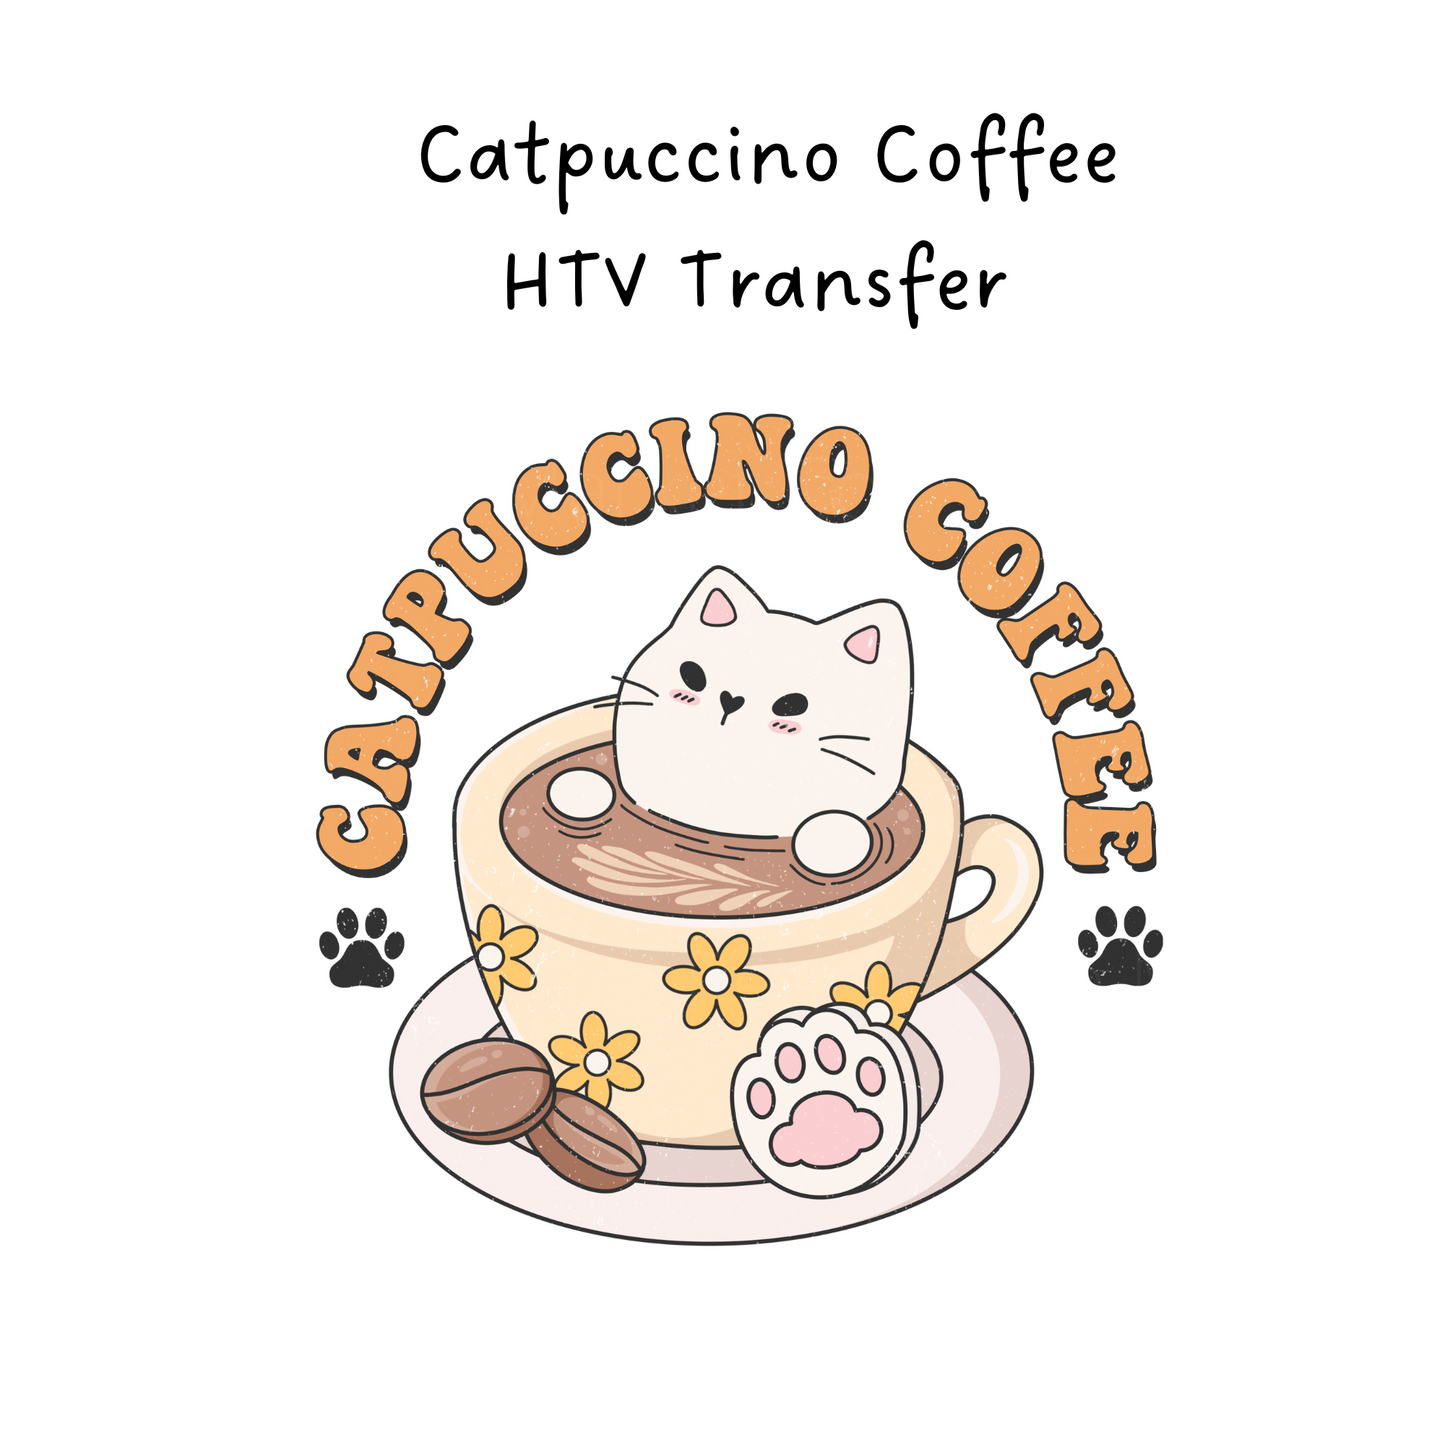 Catpuccino Coffee HTV Transfer